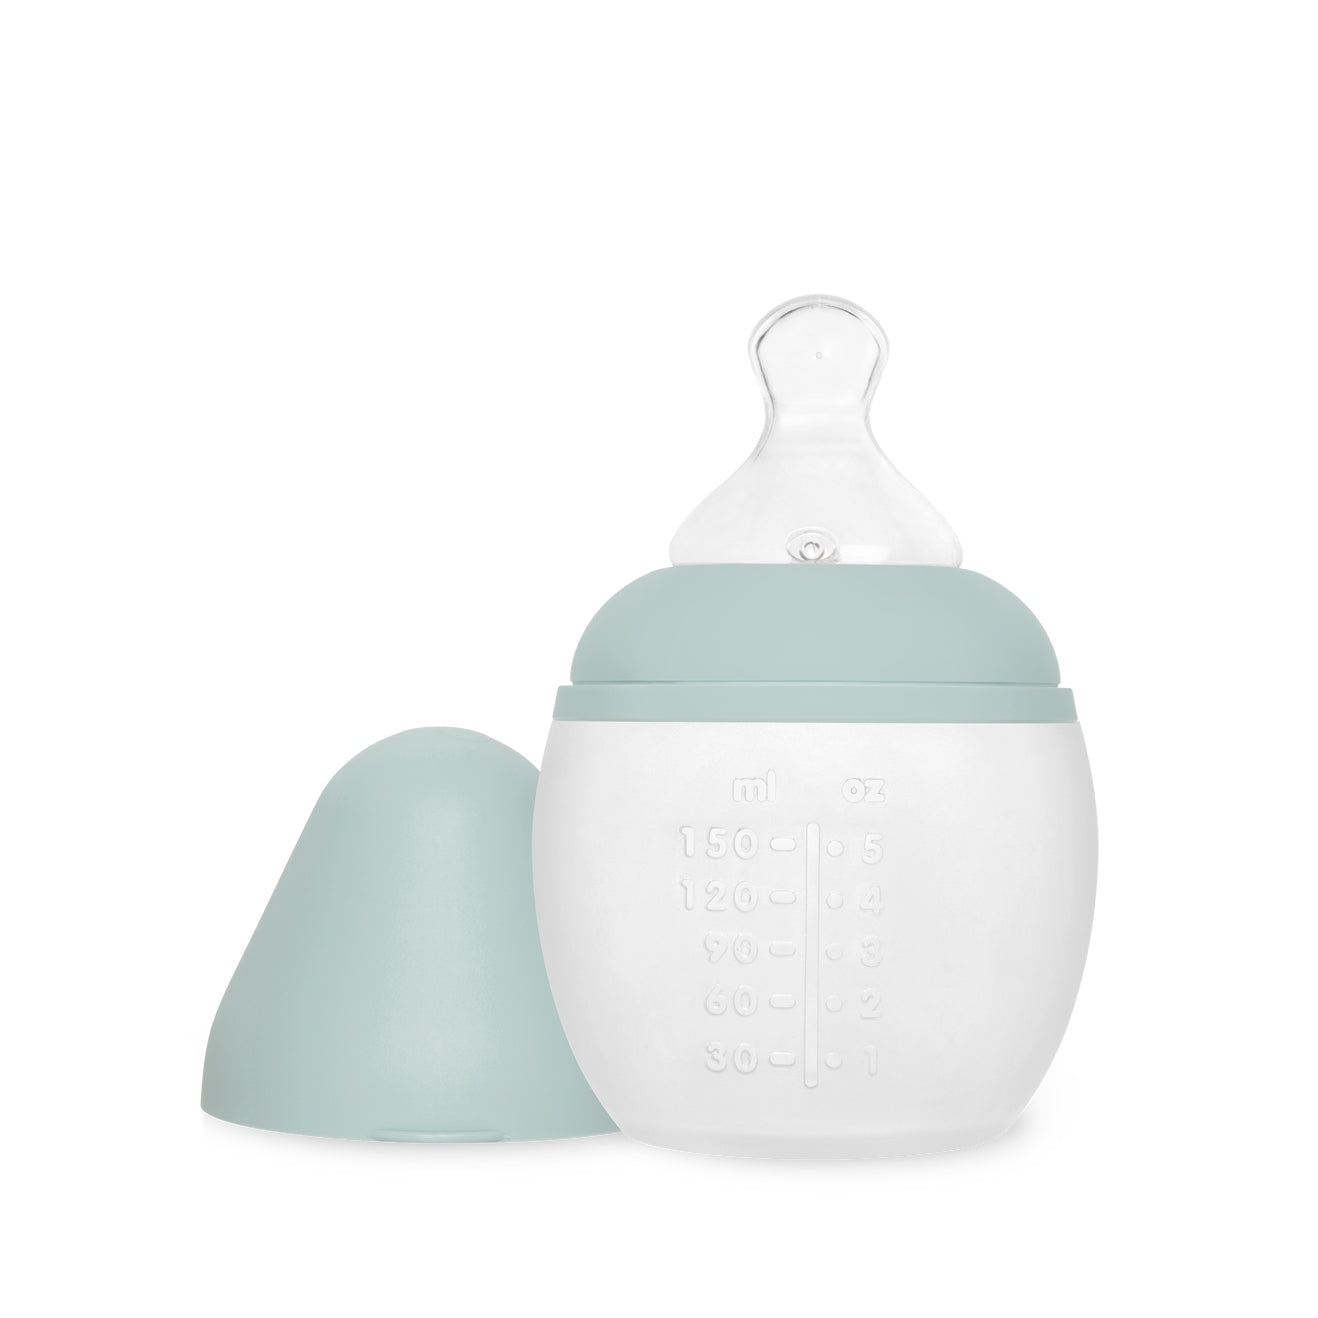 婴儿奶瓶 150ml - 05 盎司